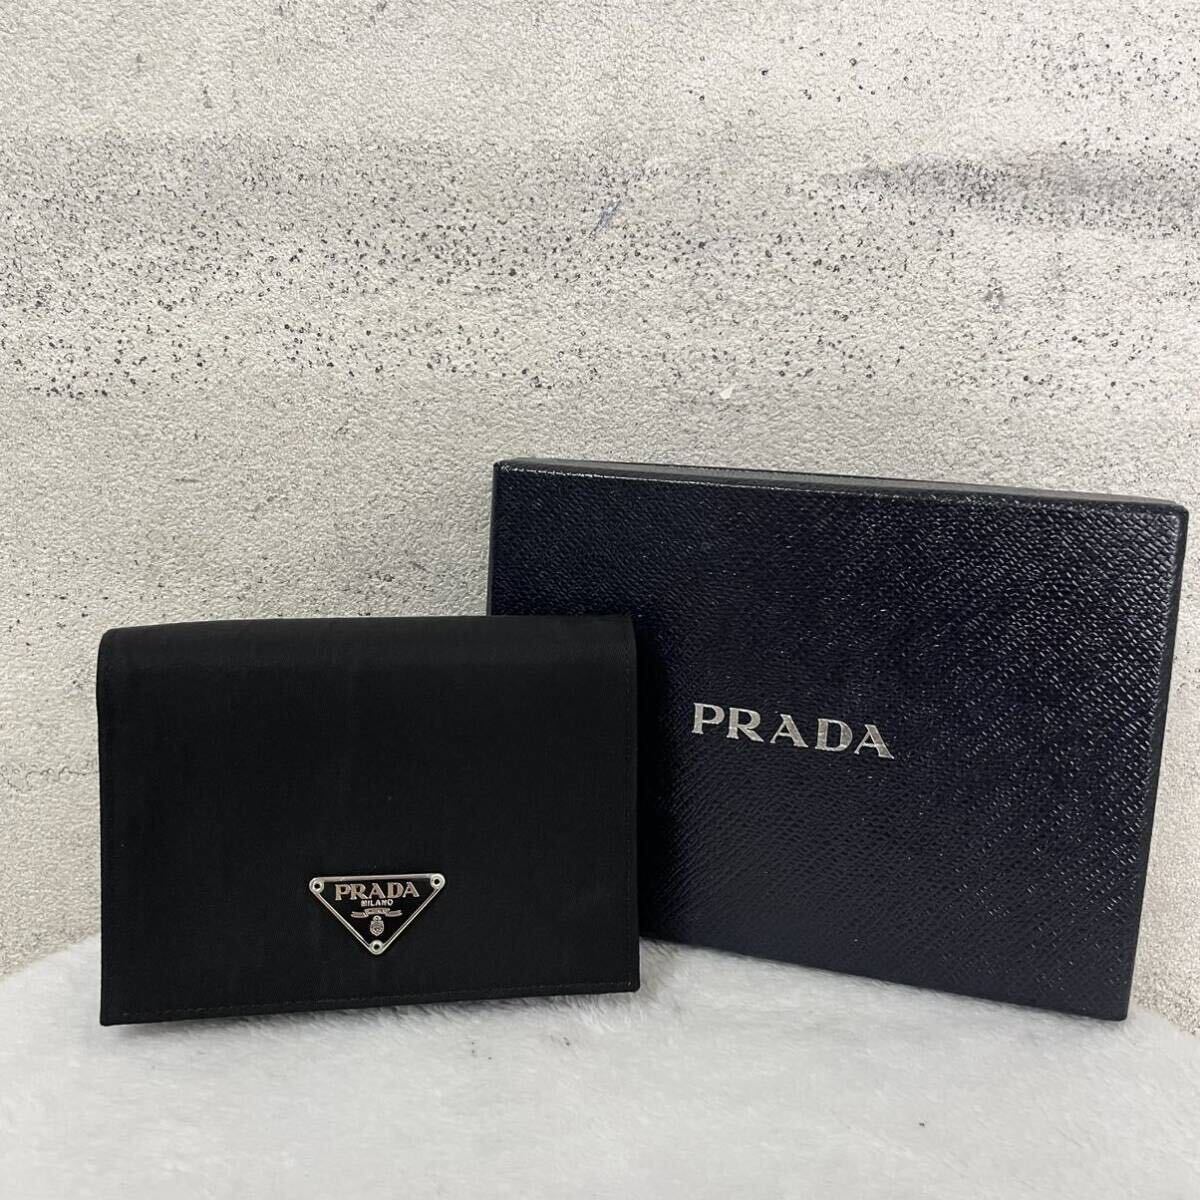 【贅沢品の極み】PRADA プラダ 折り財布 カードケース コインケース 三角プレート ナイロン 本革 レザー サフィアーノ ブラックの画像1